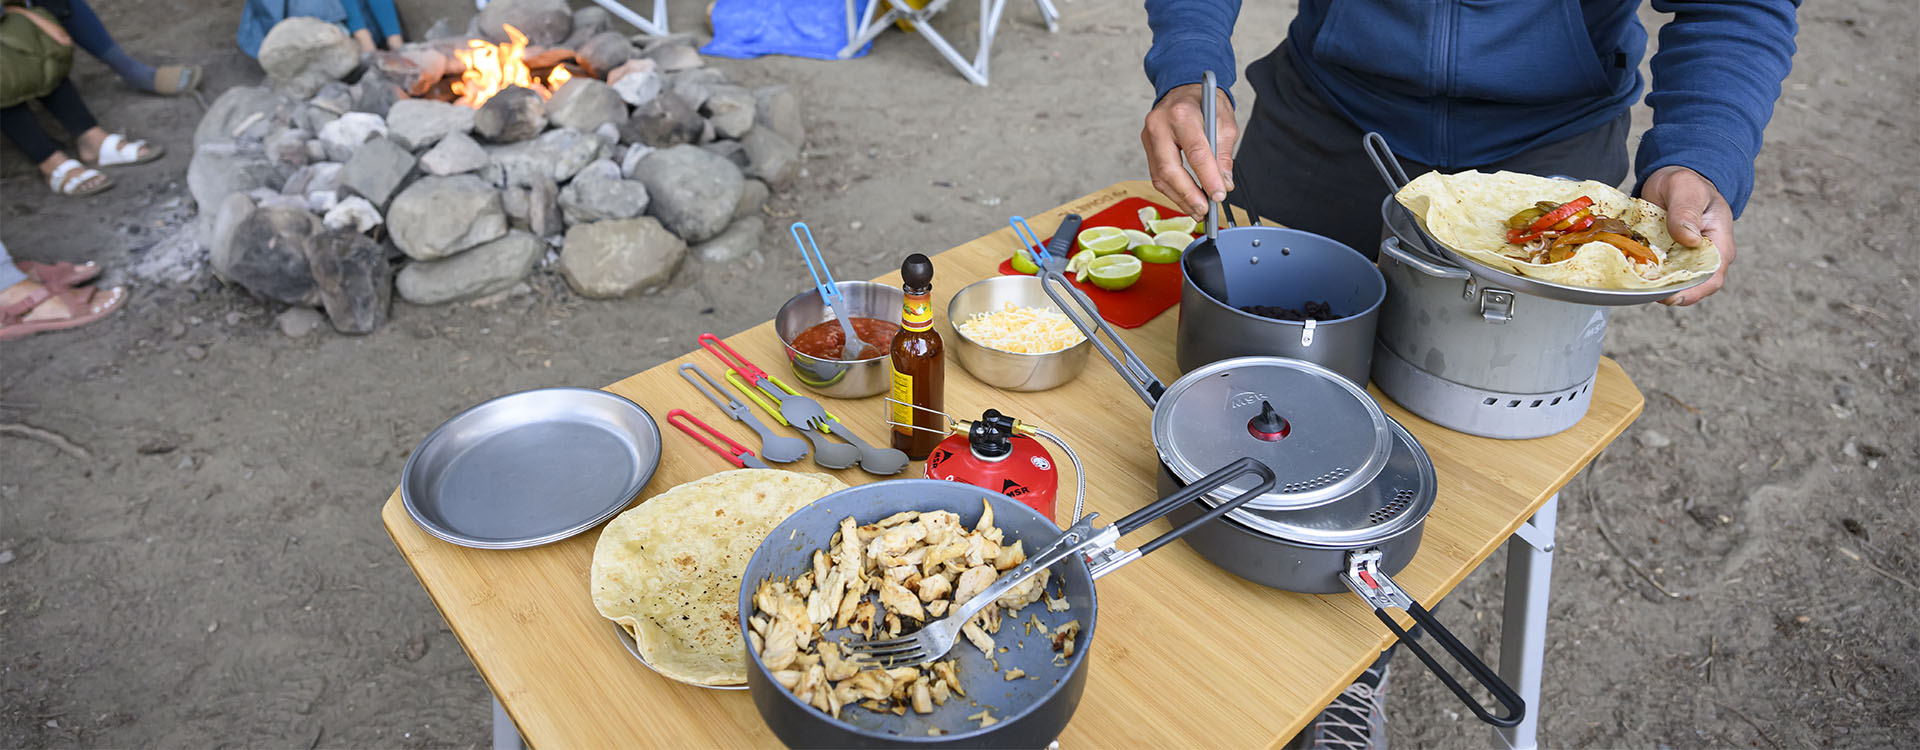 Les Essentiels du Camp Culinaire - Tout ce dont vous avez besoin pour préparer un festin en plein air.